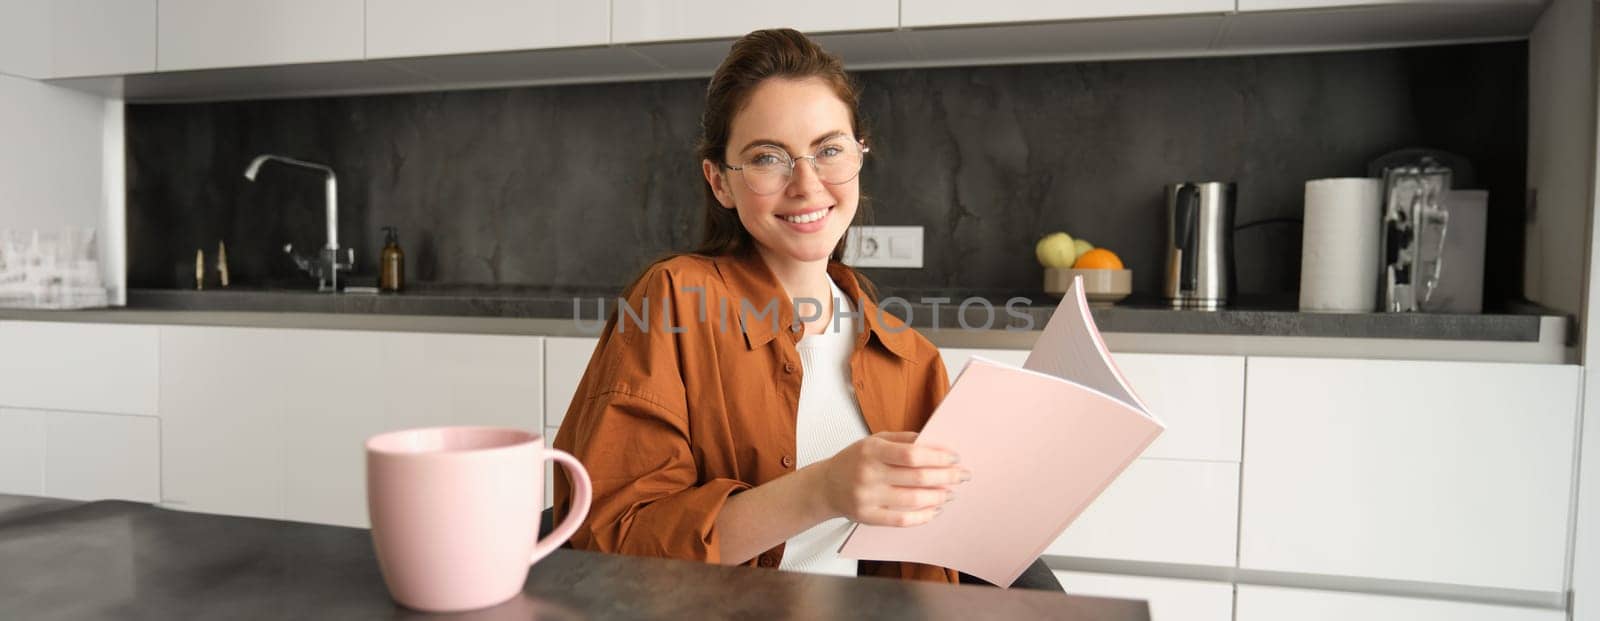 Portrait of smiling girl, student in glasses in kitchen, holding folder, doing homework, revising for test, reading document.